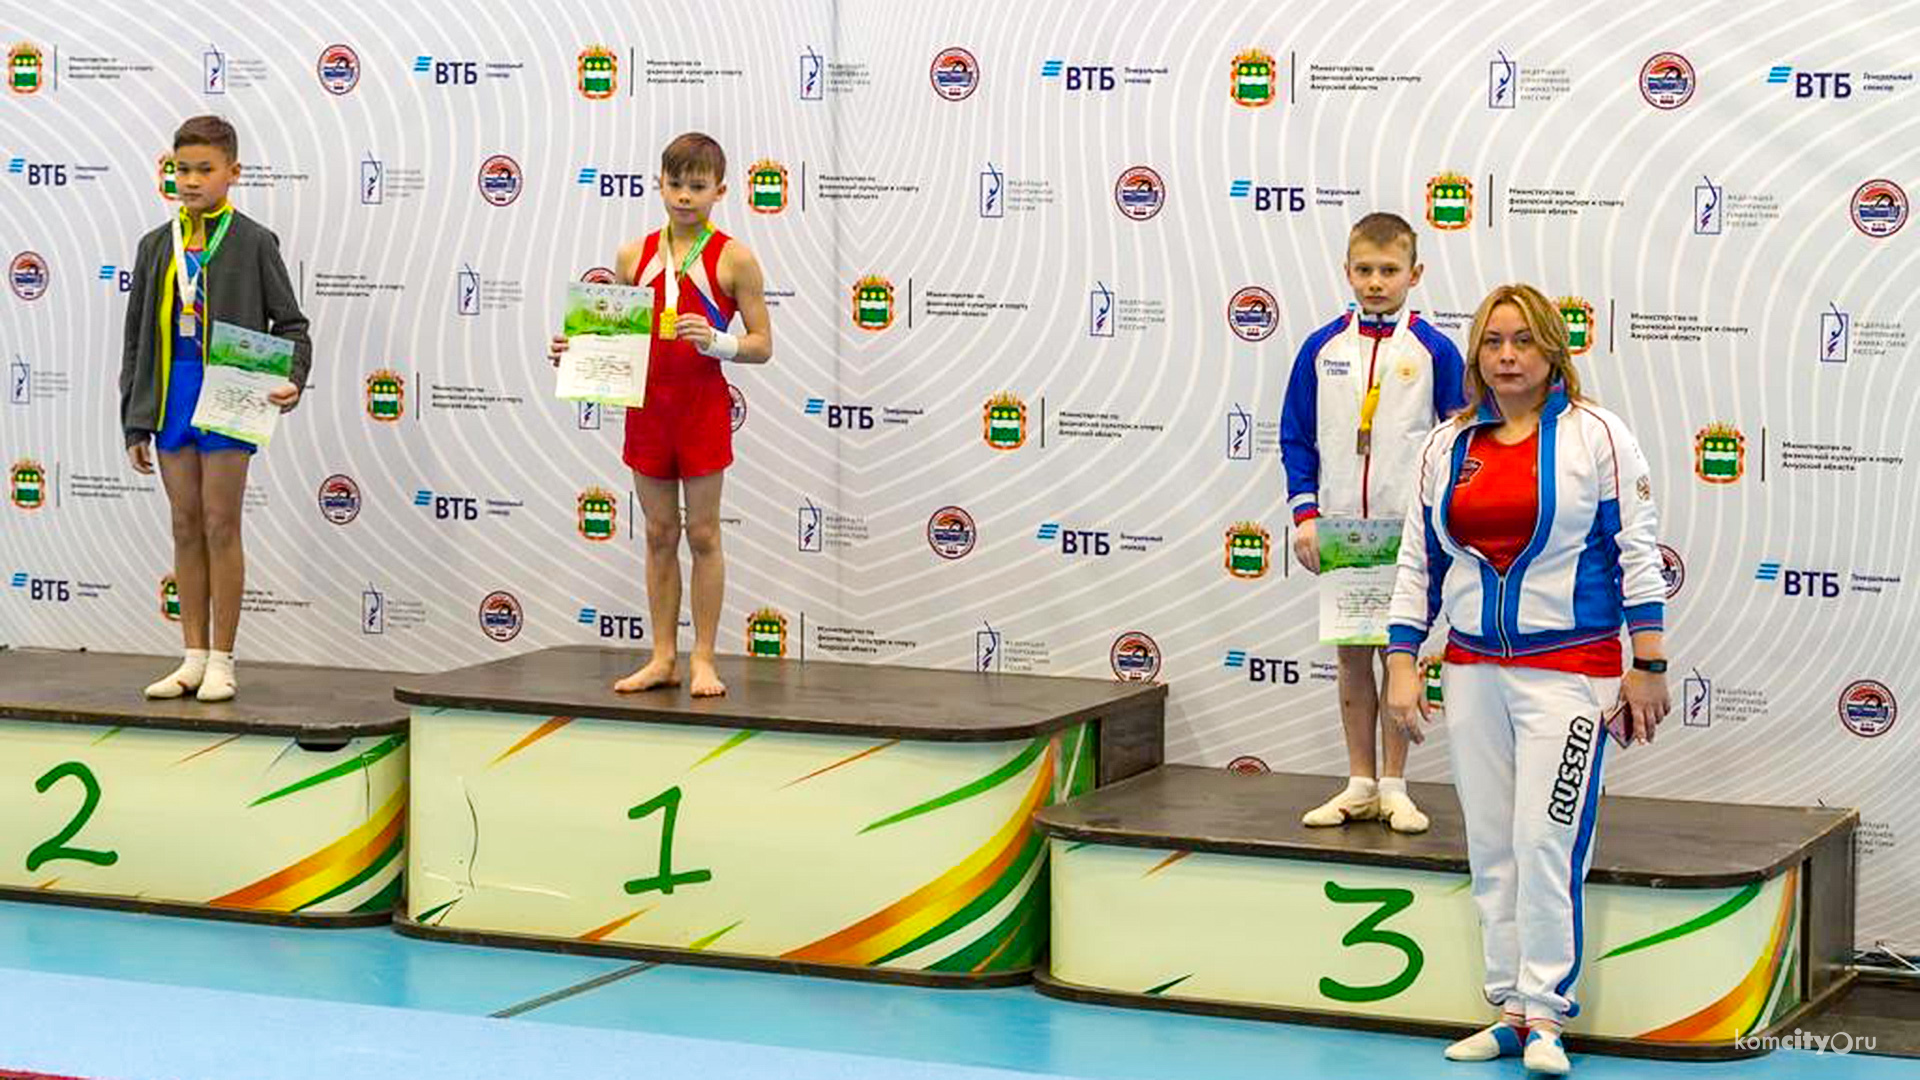 Комсомольский гимнаст завоевал четыре золотых медали на всероссийских соревнованиях в Благовещенске